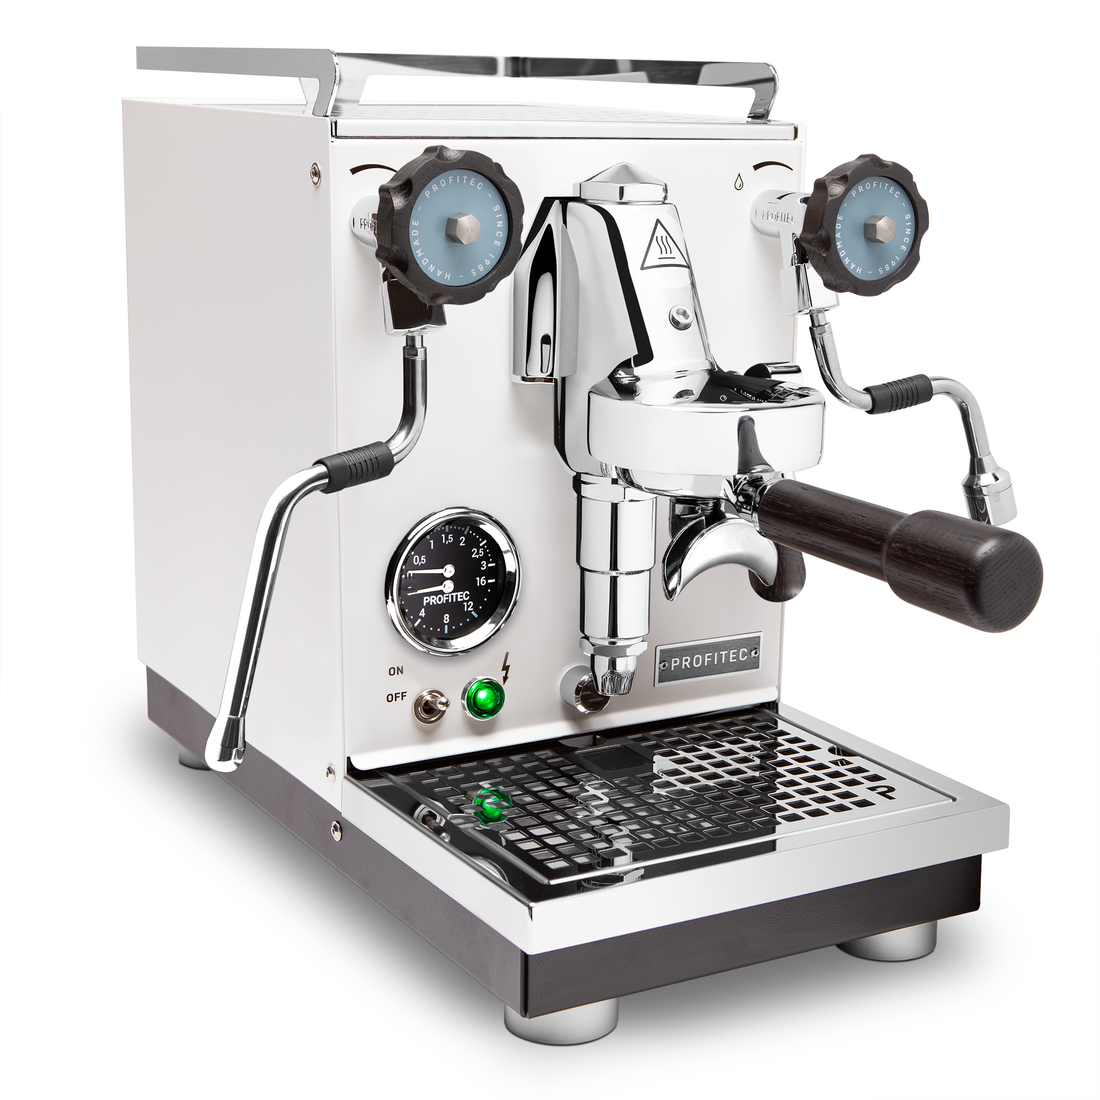 Profitec Pro 400 Espresso Machine in Matte White with Blackened Oak